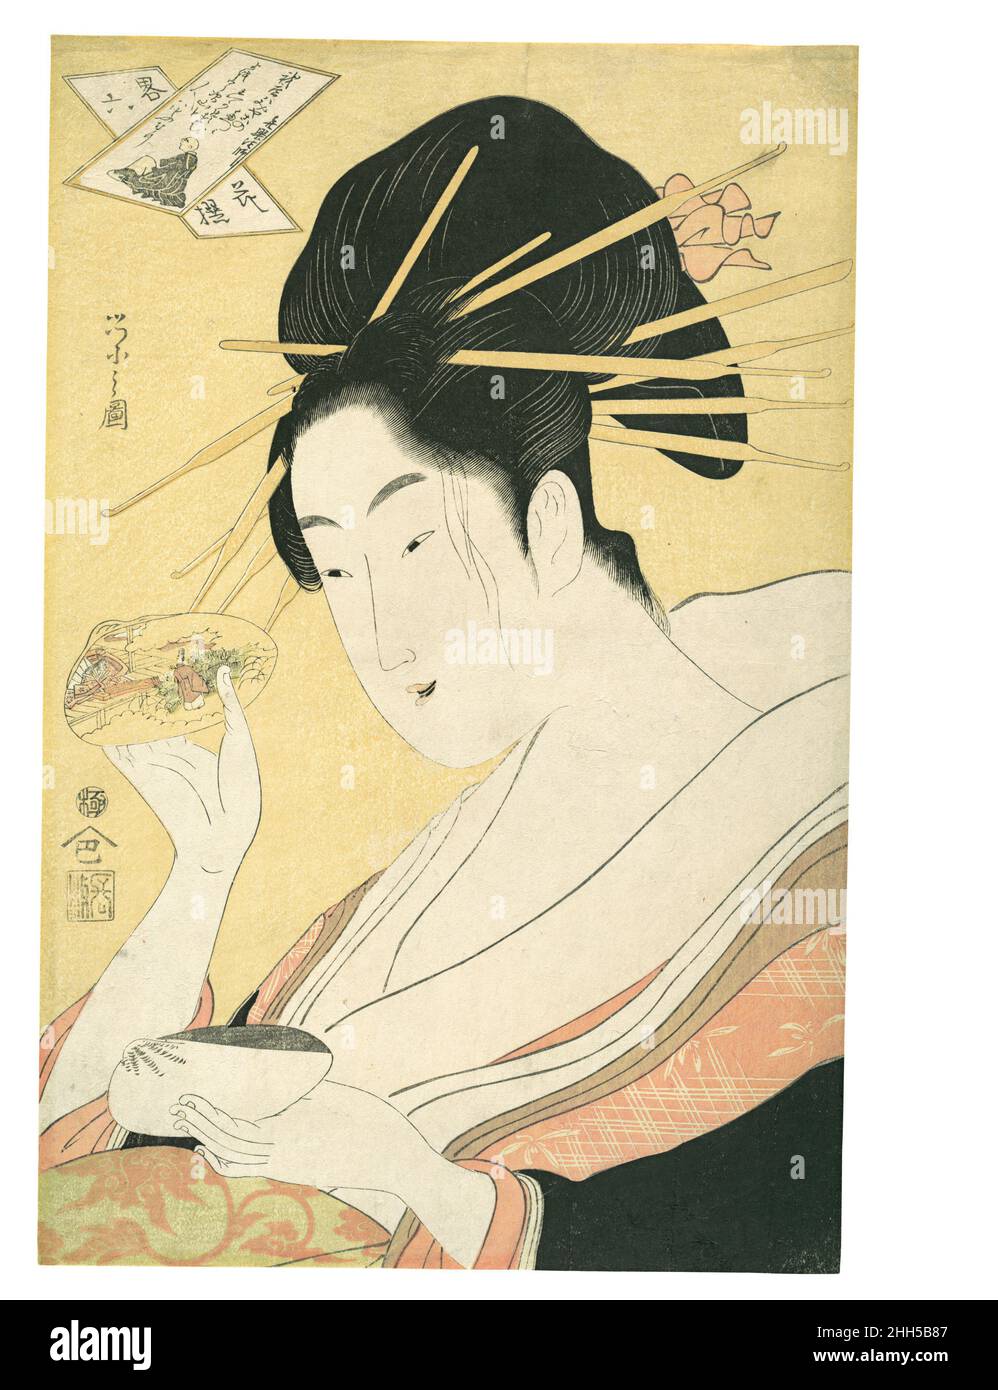 Matching Shells (Kai-awase), "Kisen Hōshi", de la série des parodies modernes des six Immortels poétiques (Yatsushi rokkasen: Kisen Hōshi) ca.1796–98 Chōbunsai Eishi Japanese cette image capture le vogue pour les portraits en demi-longueur de beautés qui sont devenus une marque de commerce de Chōbunsai Eishi's Contemporary, Kitagawa Utamaro (ca.1753–1806).Conformément au titre de la série, il utilise le dispositif parodique par lequel les chiffres du passé sont représentés sous une forme contemporaine, parfois comme une personne de statut inférieur ou un sexe différent.Ici, le moine-poète de la période Heian Kisen Hōshi est représenté par une cour Banque D'Images